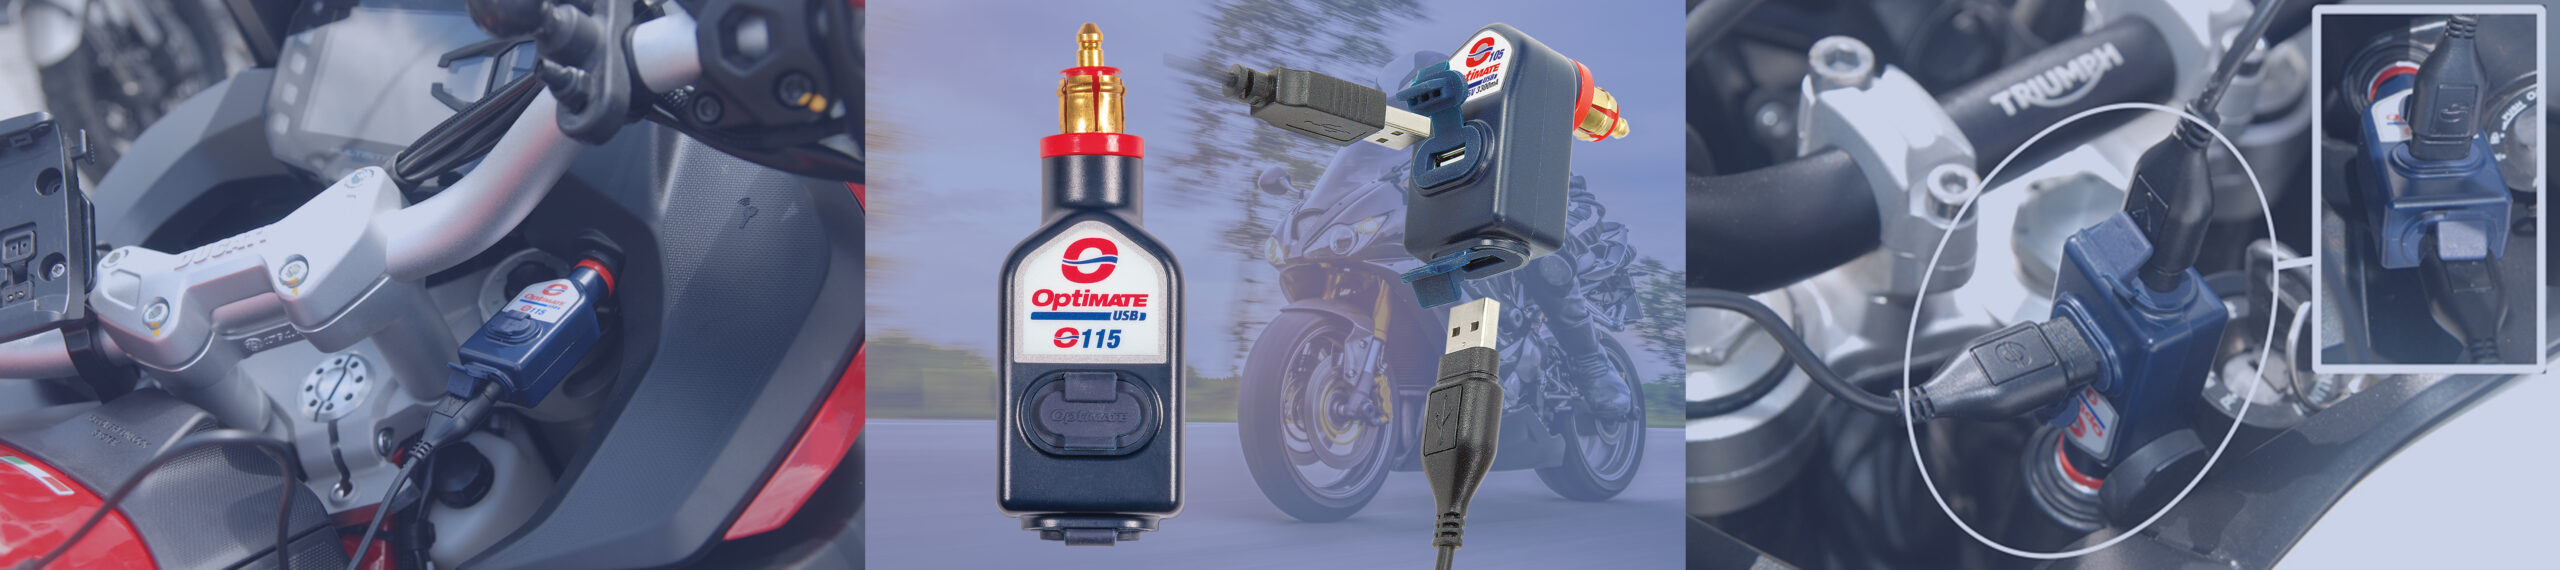 O-115 und O-105 OptiMate USB-Ladegeräte, die an Motorradsteckdosen angeschlossen sind